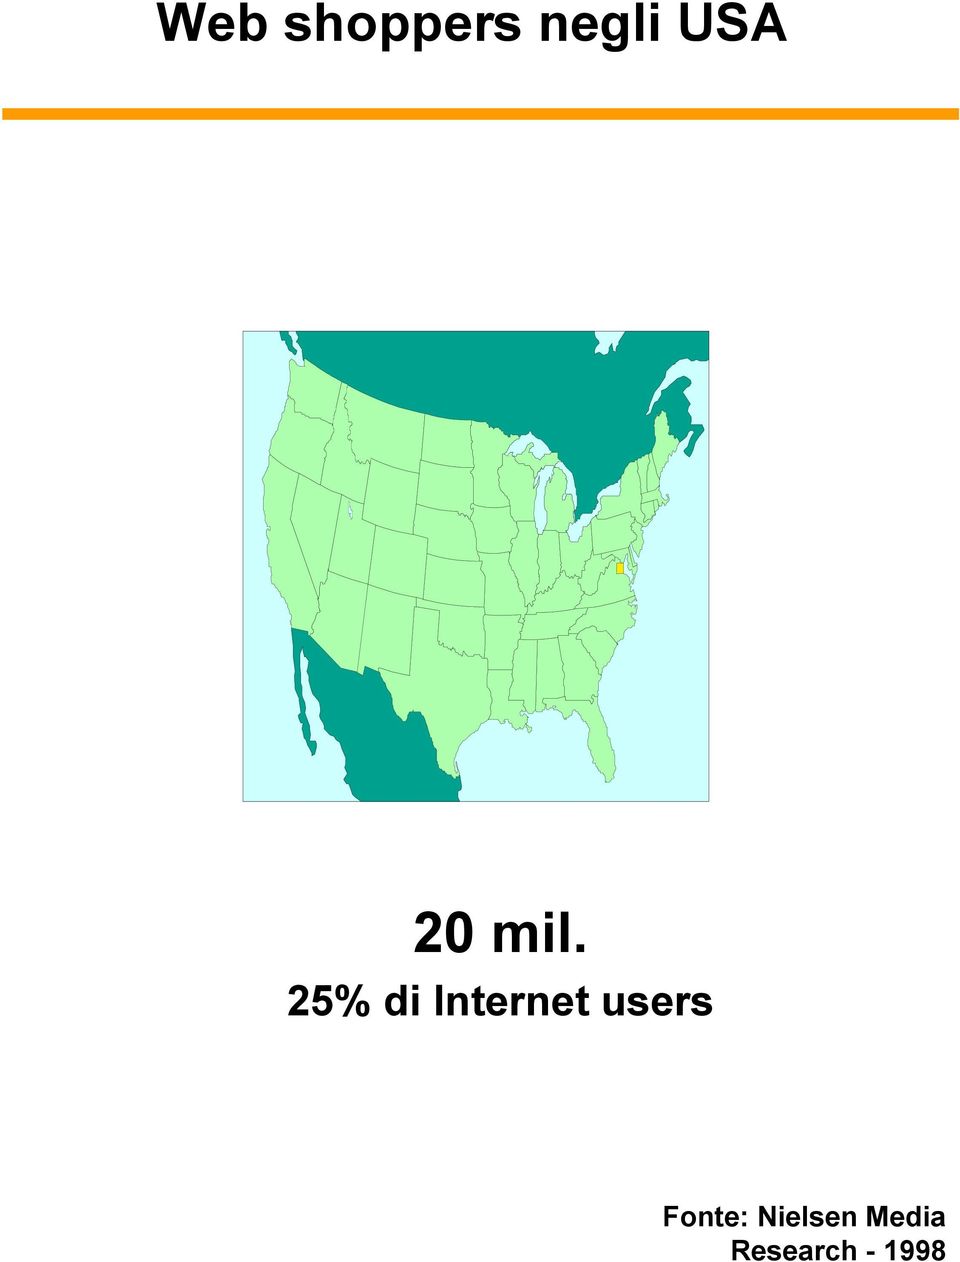 25% di Internet users